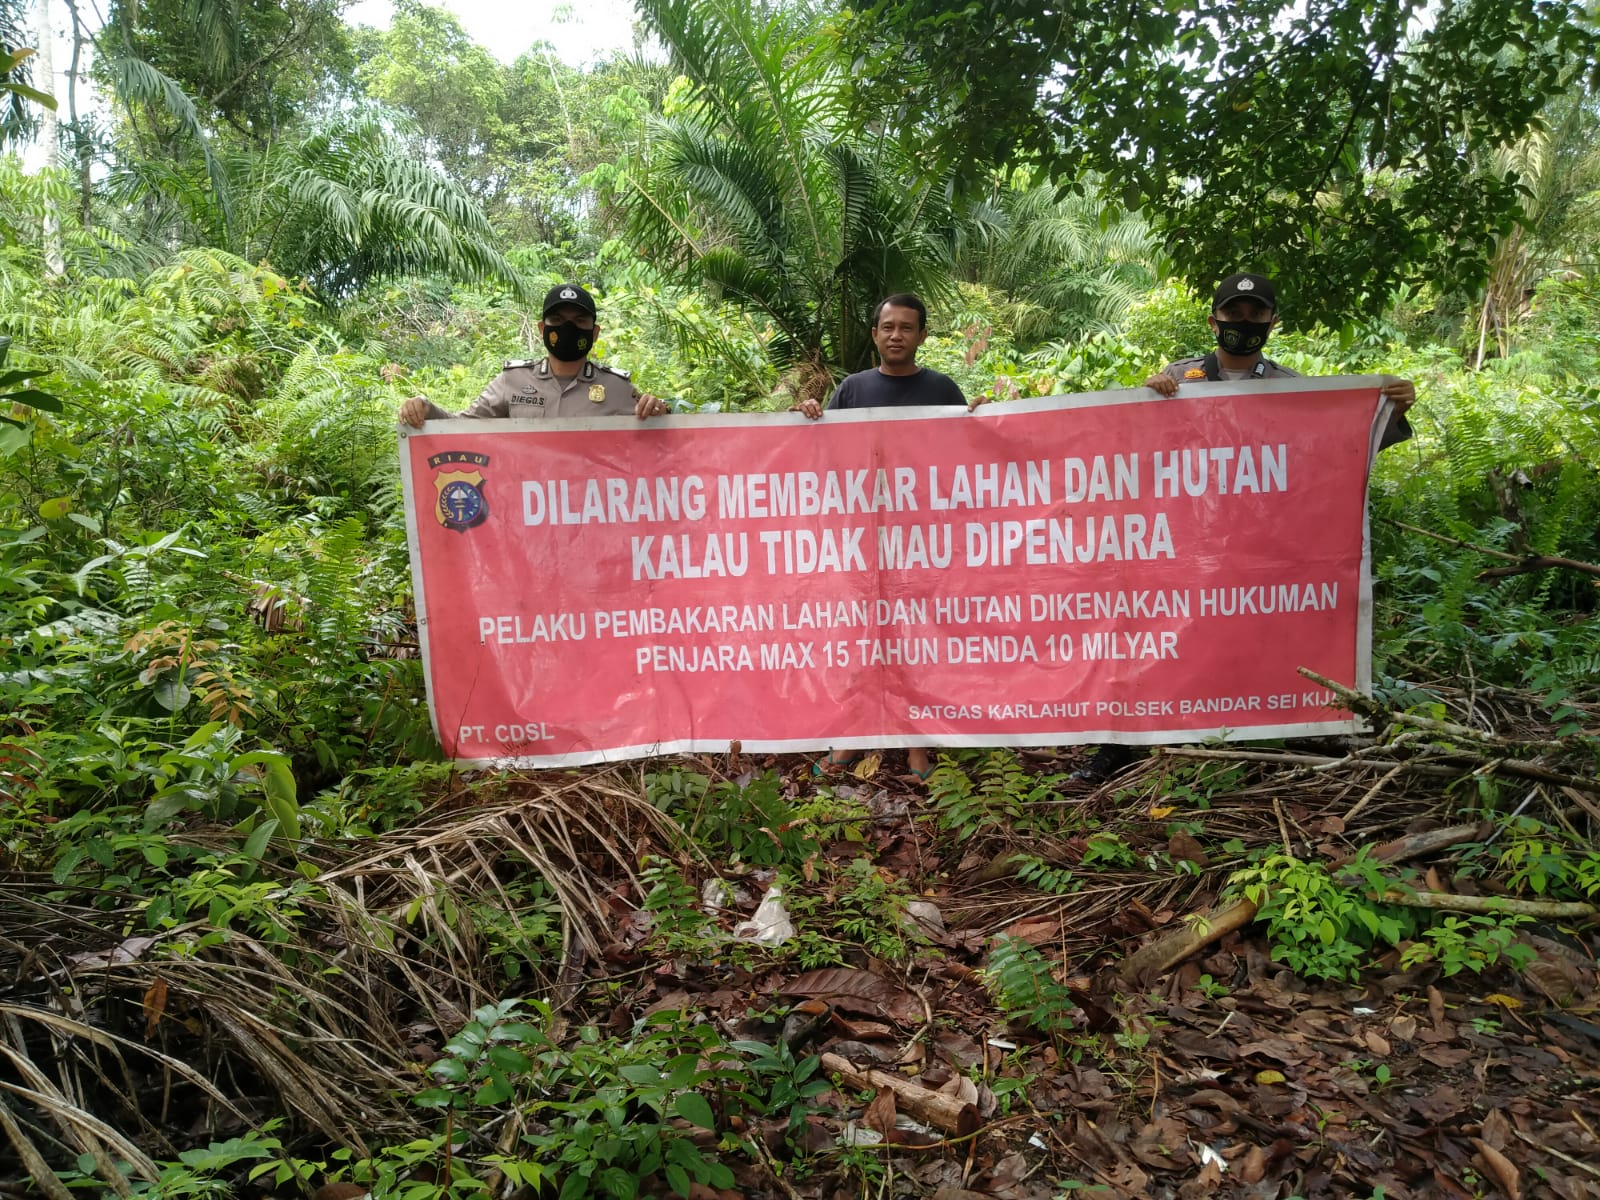 Antisipasi Karhutla, Personel Polsek Bandar Sei Kijang Sampaikan Maklumat Kapolda Riau